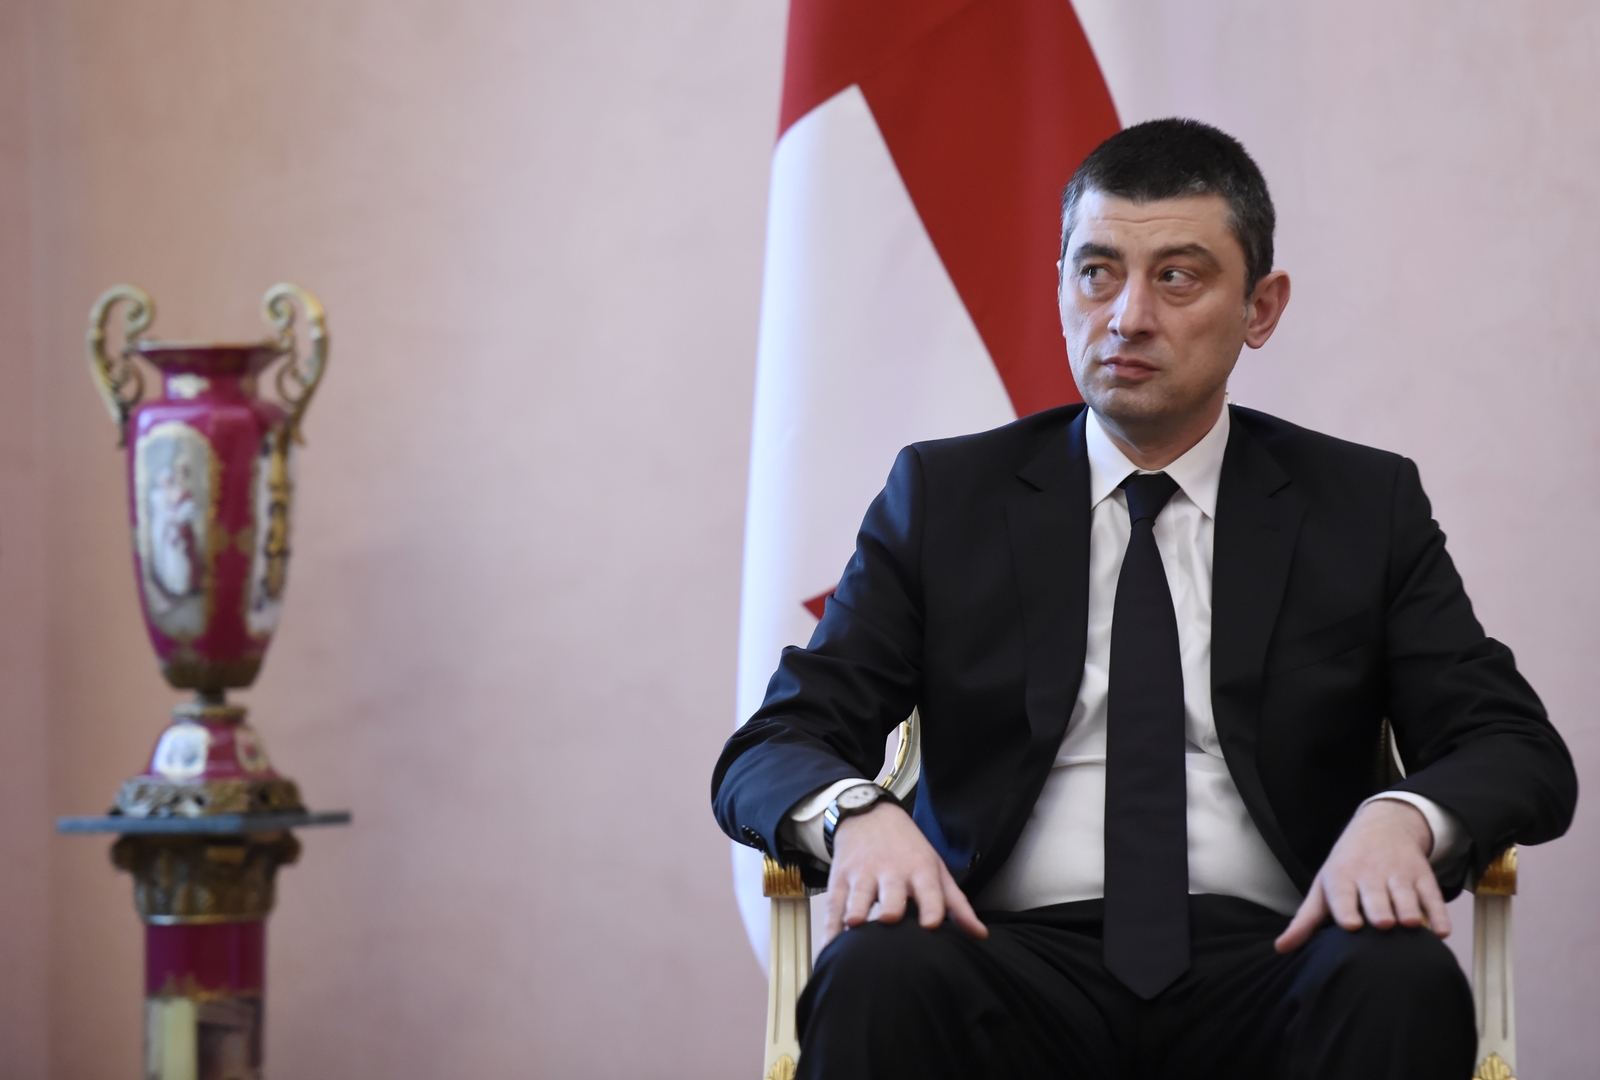 رئيس وزراء جورجيا يعلن استقالته بسبب خلافات مع فريقه الحكومي